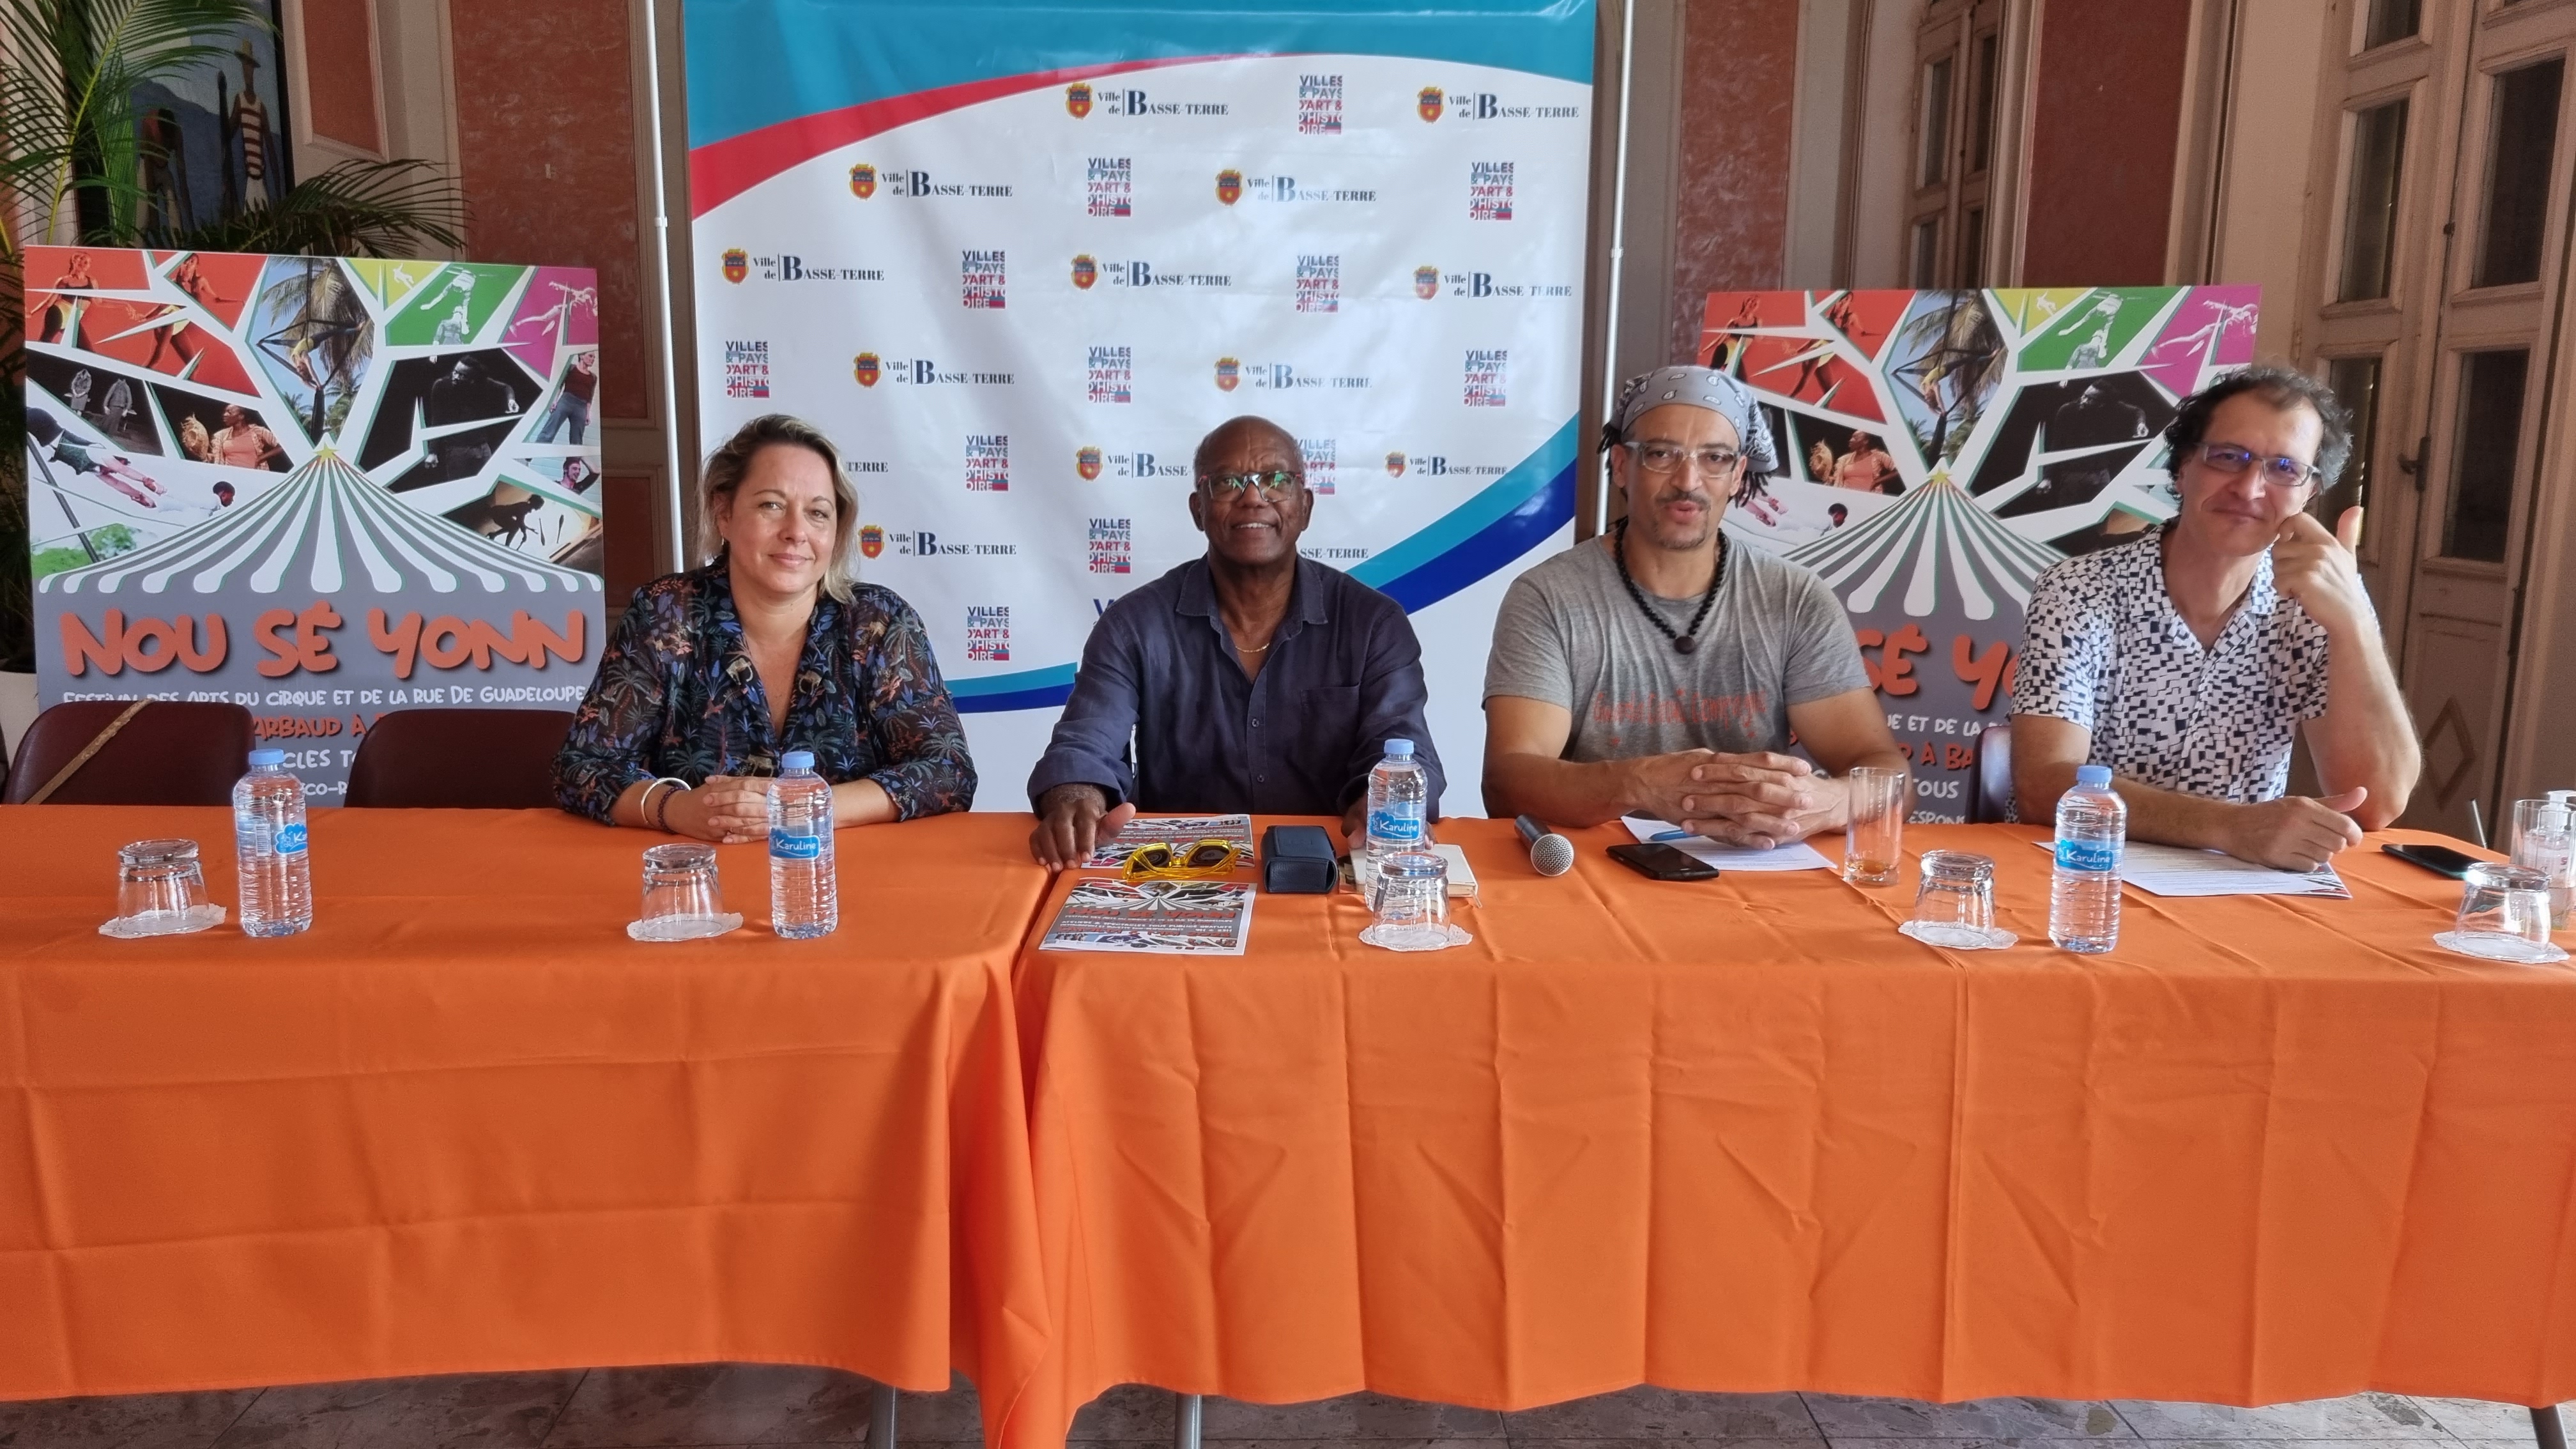     Troisième édition du festival des Arts du Cirque et de la rue de Guadeloupe à Basse-Terre

